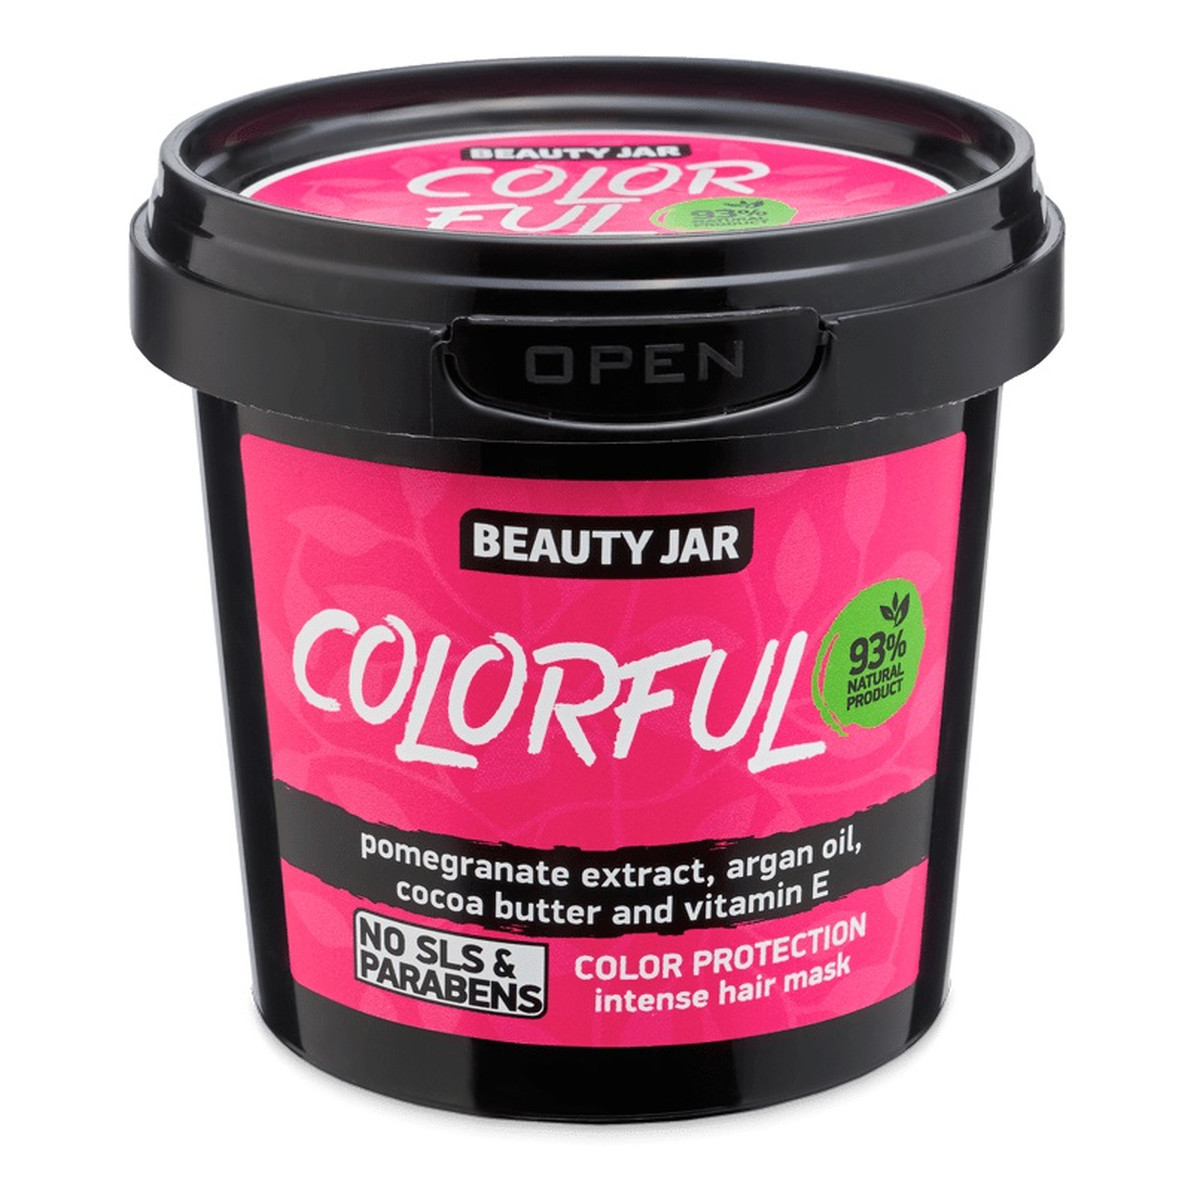 Beauty Jar Colorful Intensywna maska chroniąca kolor włosów farbowanych 150g